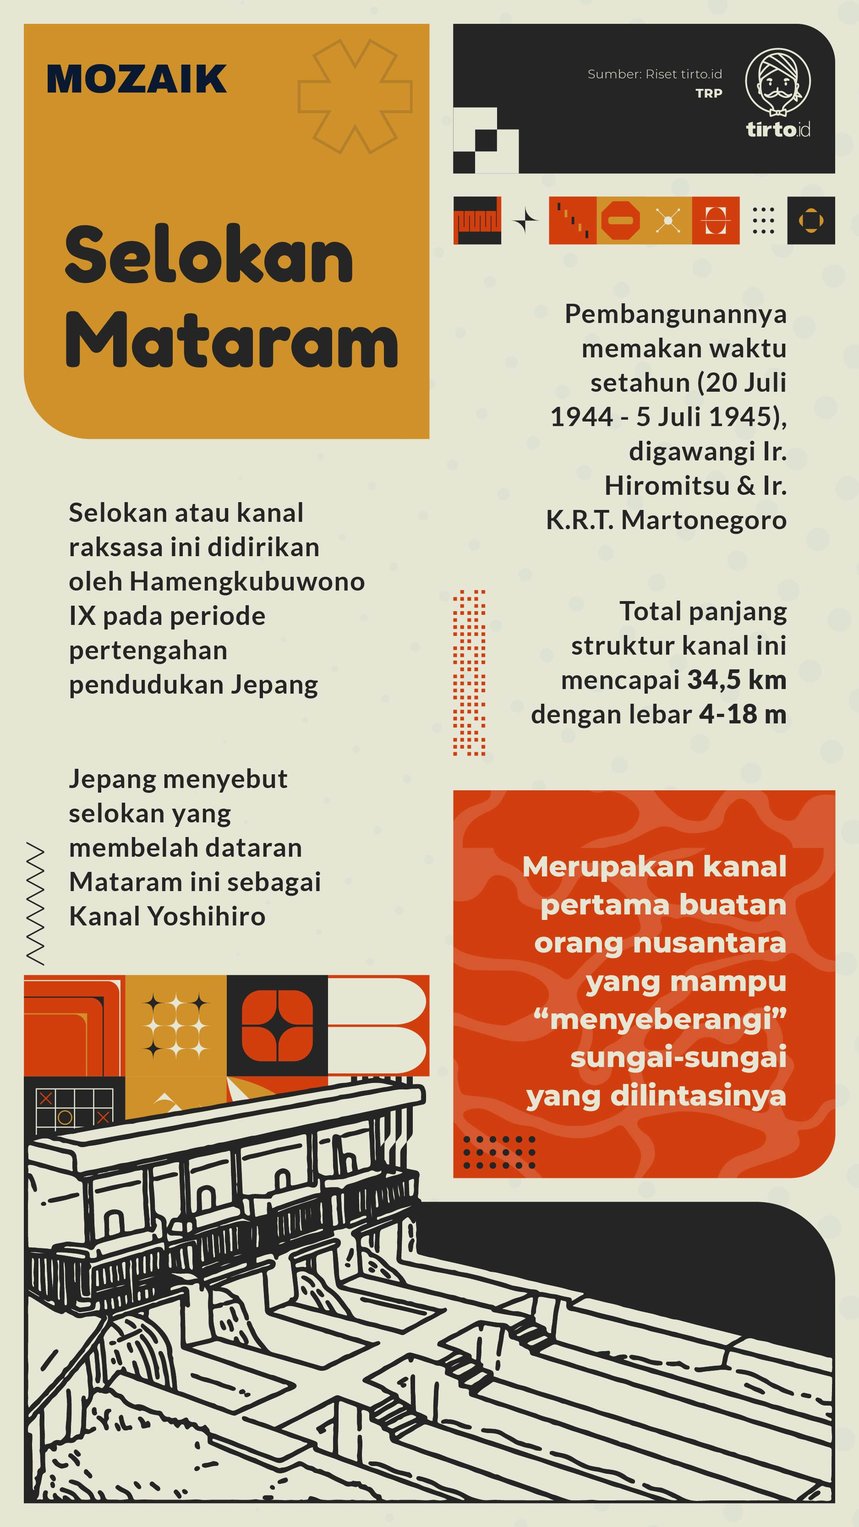 Infografik Mozaik Selokan Mataram